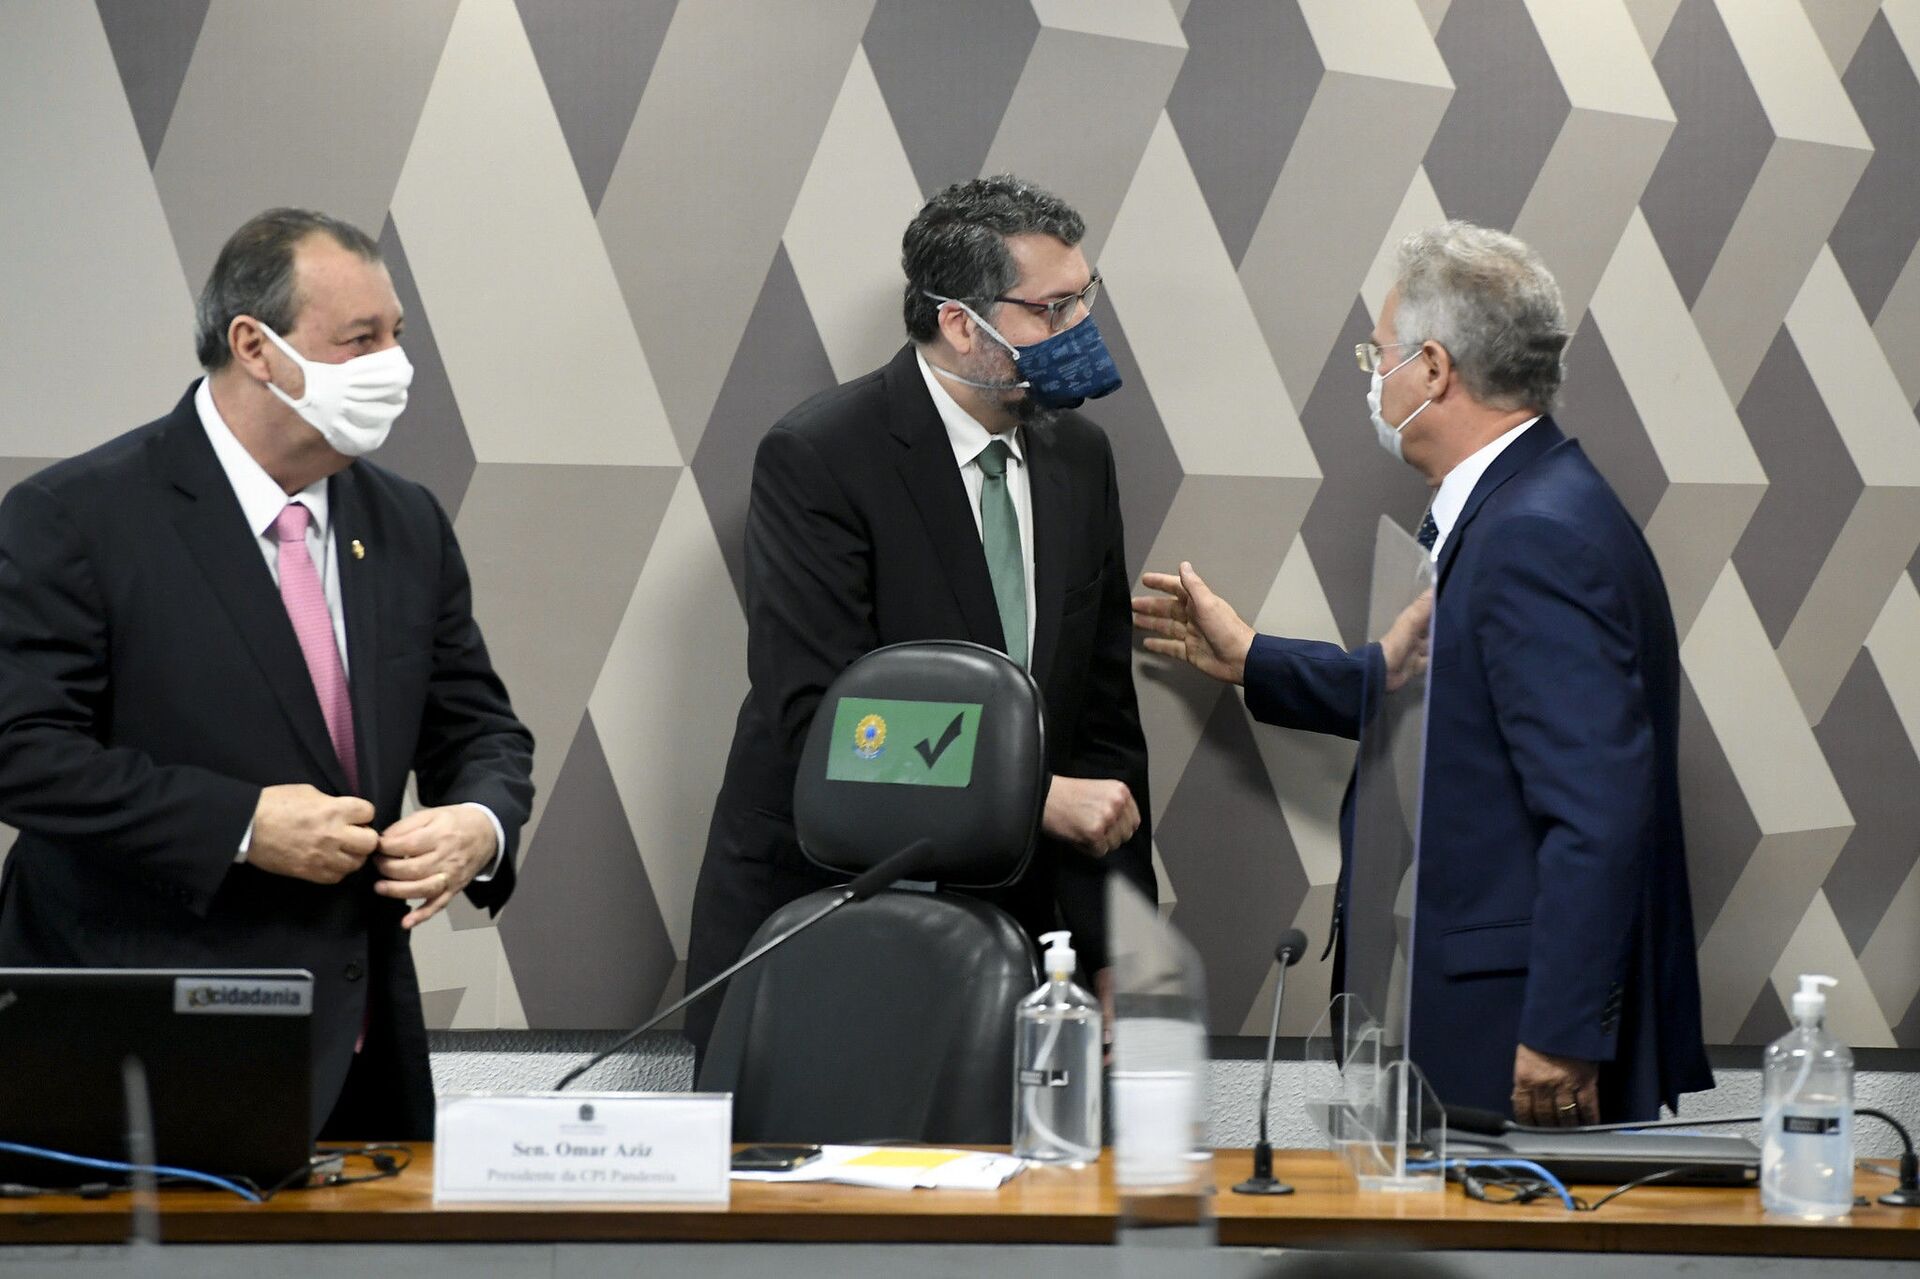 Presidente Bolsonaro ataca Aziz, Calheiros e chama presidente do TSE de 'imbecil' e 'idiota' - Sputnik Brasil, 1920, 09.07.2021